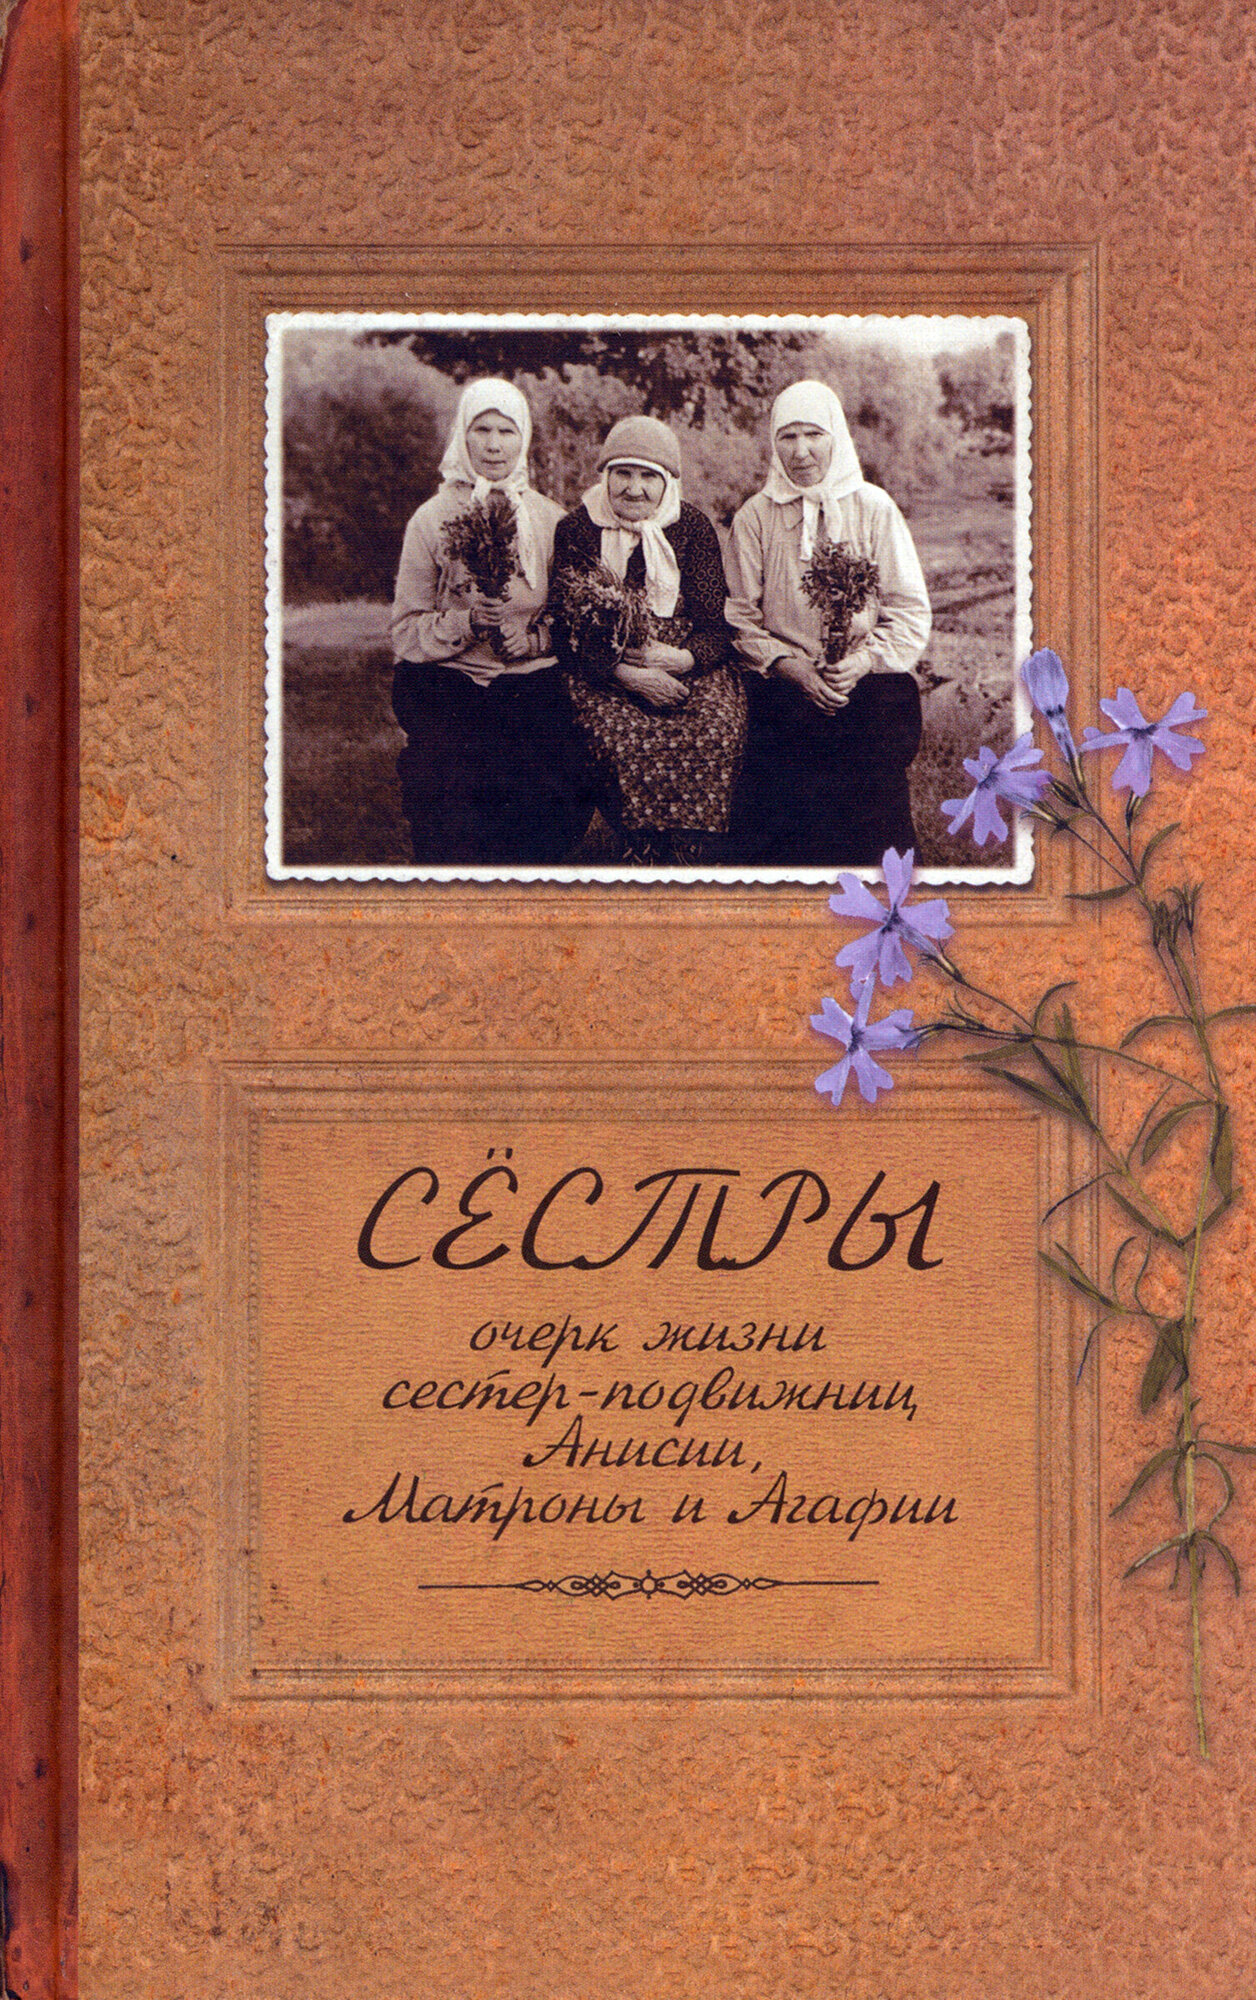 Сестры. Очерк жизни сестер-подвижниц Анисии, Матроны и Агафии - фото №12